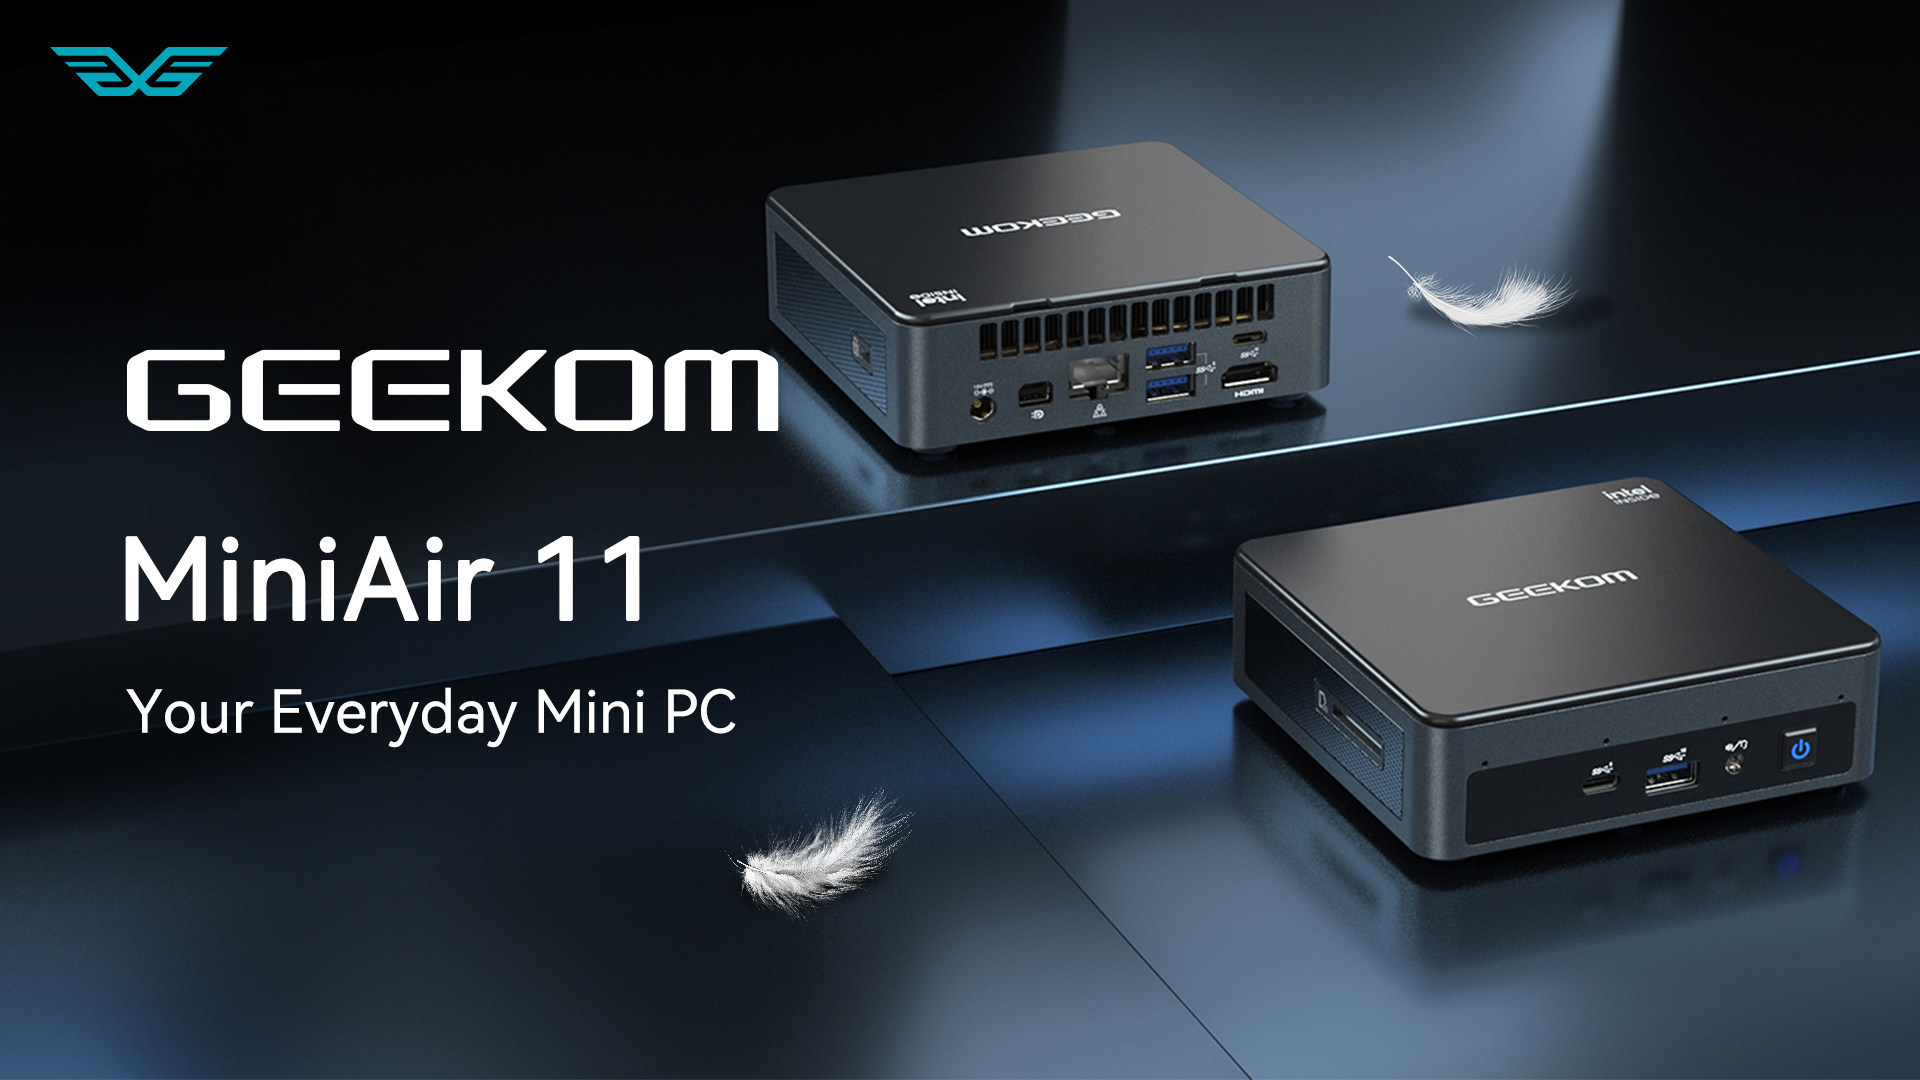 Le mini-PC GEEKOM pourrait bien être le prochain NUC – MediaConnect